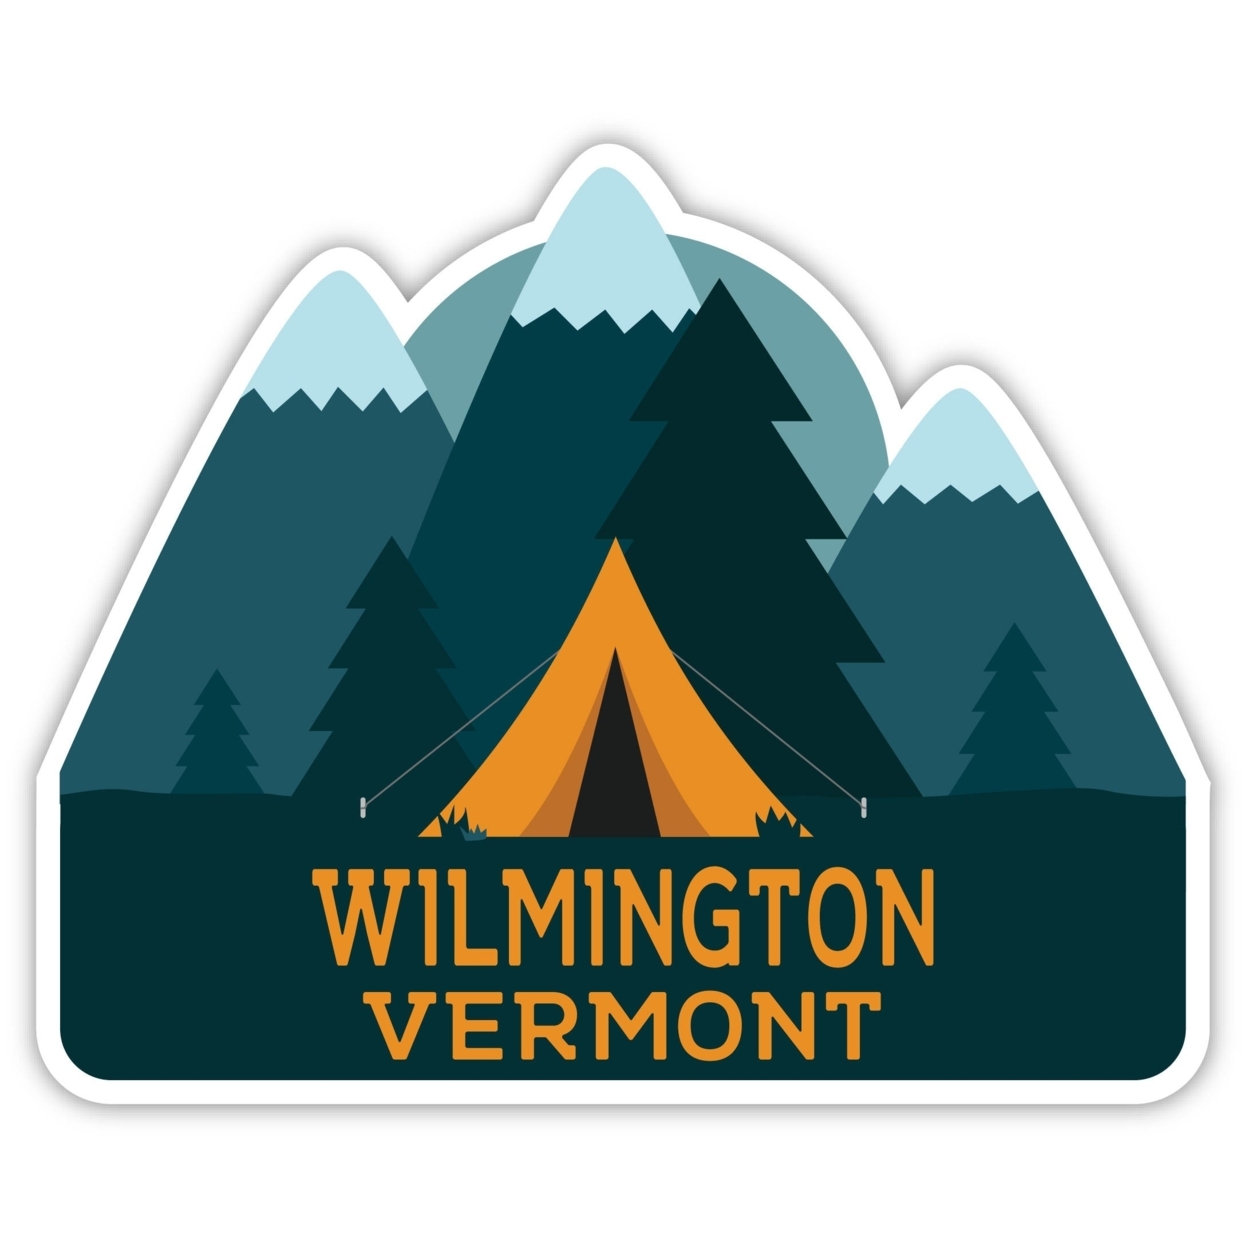 Wilmington Vermont Souvenir Decorative Stickers (Choose Theme And Size) - Single Unit, 2-Inch, Tent